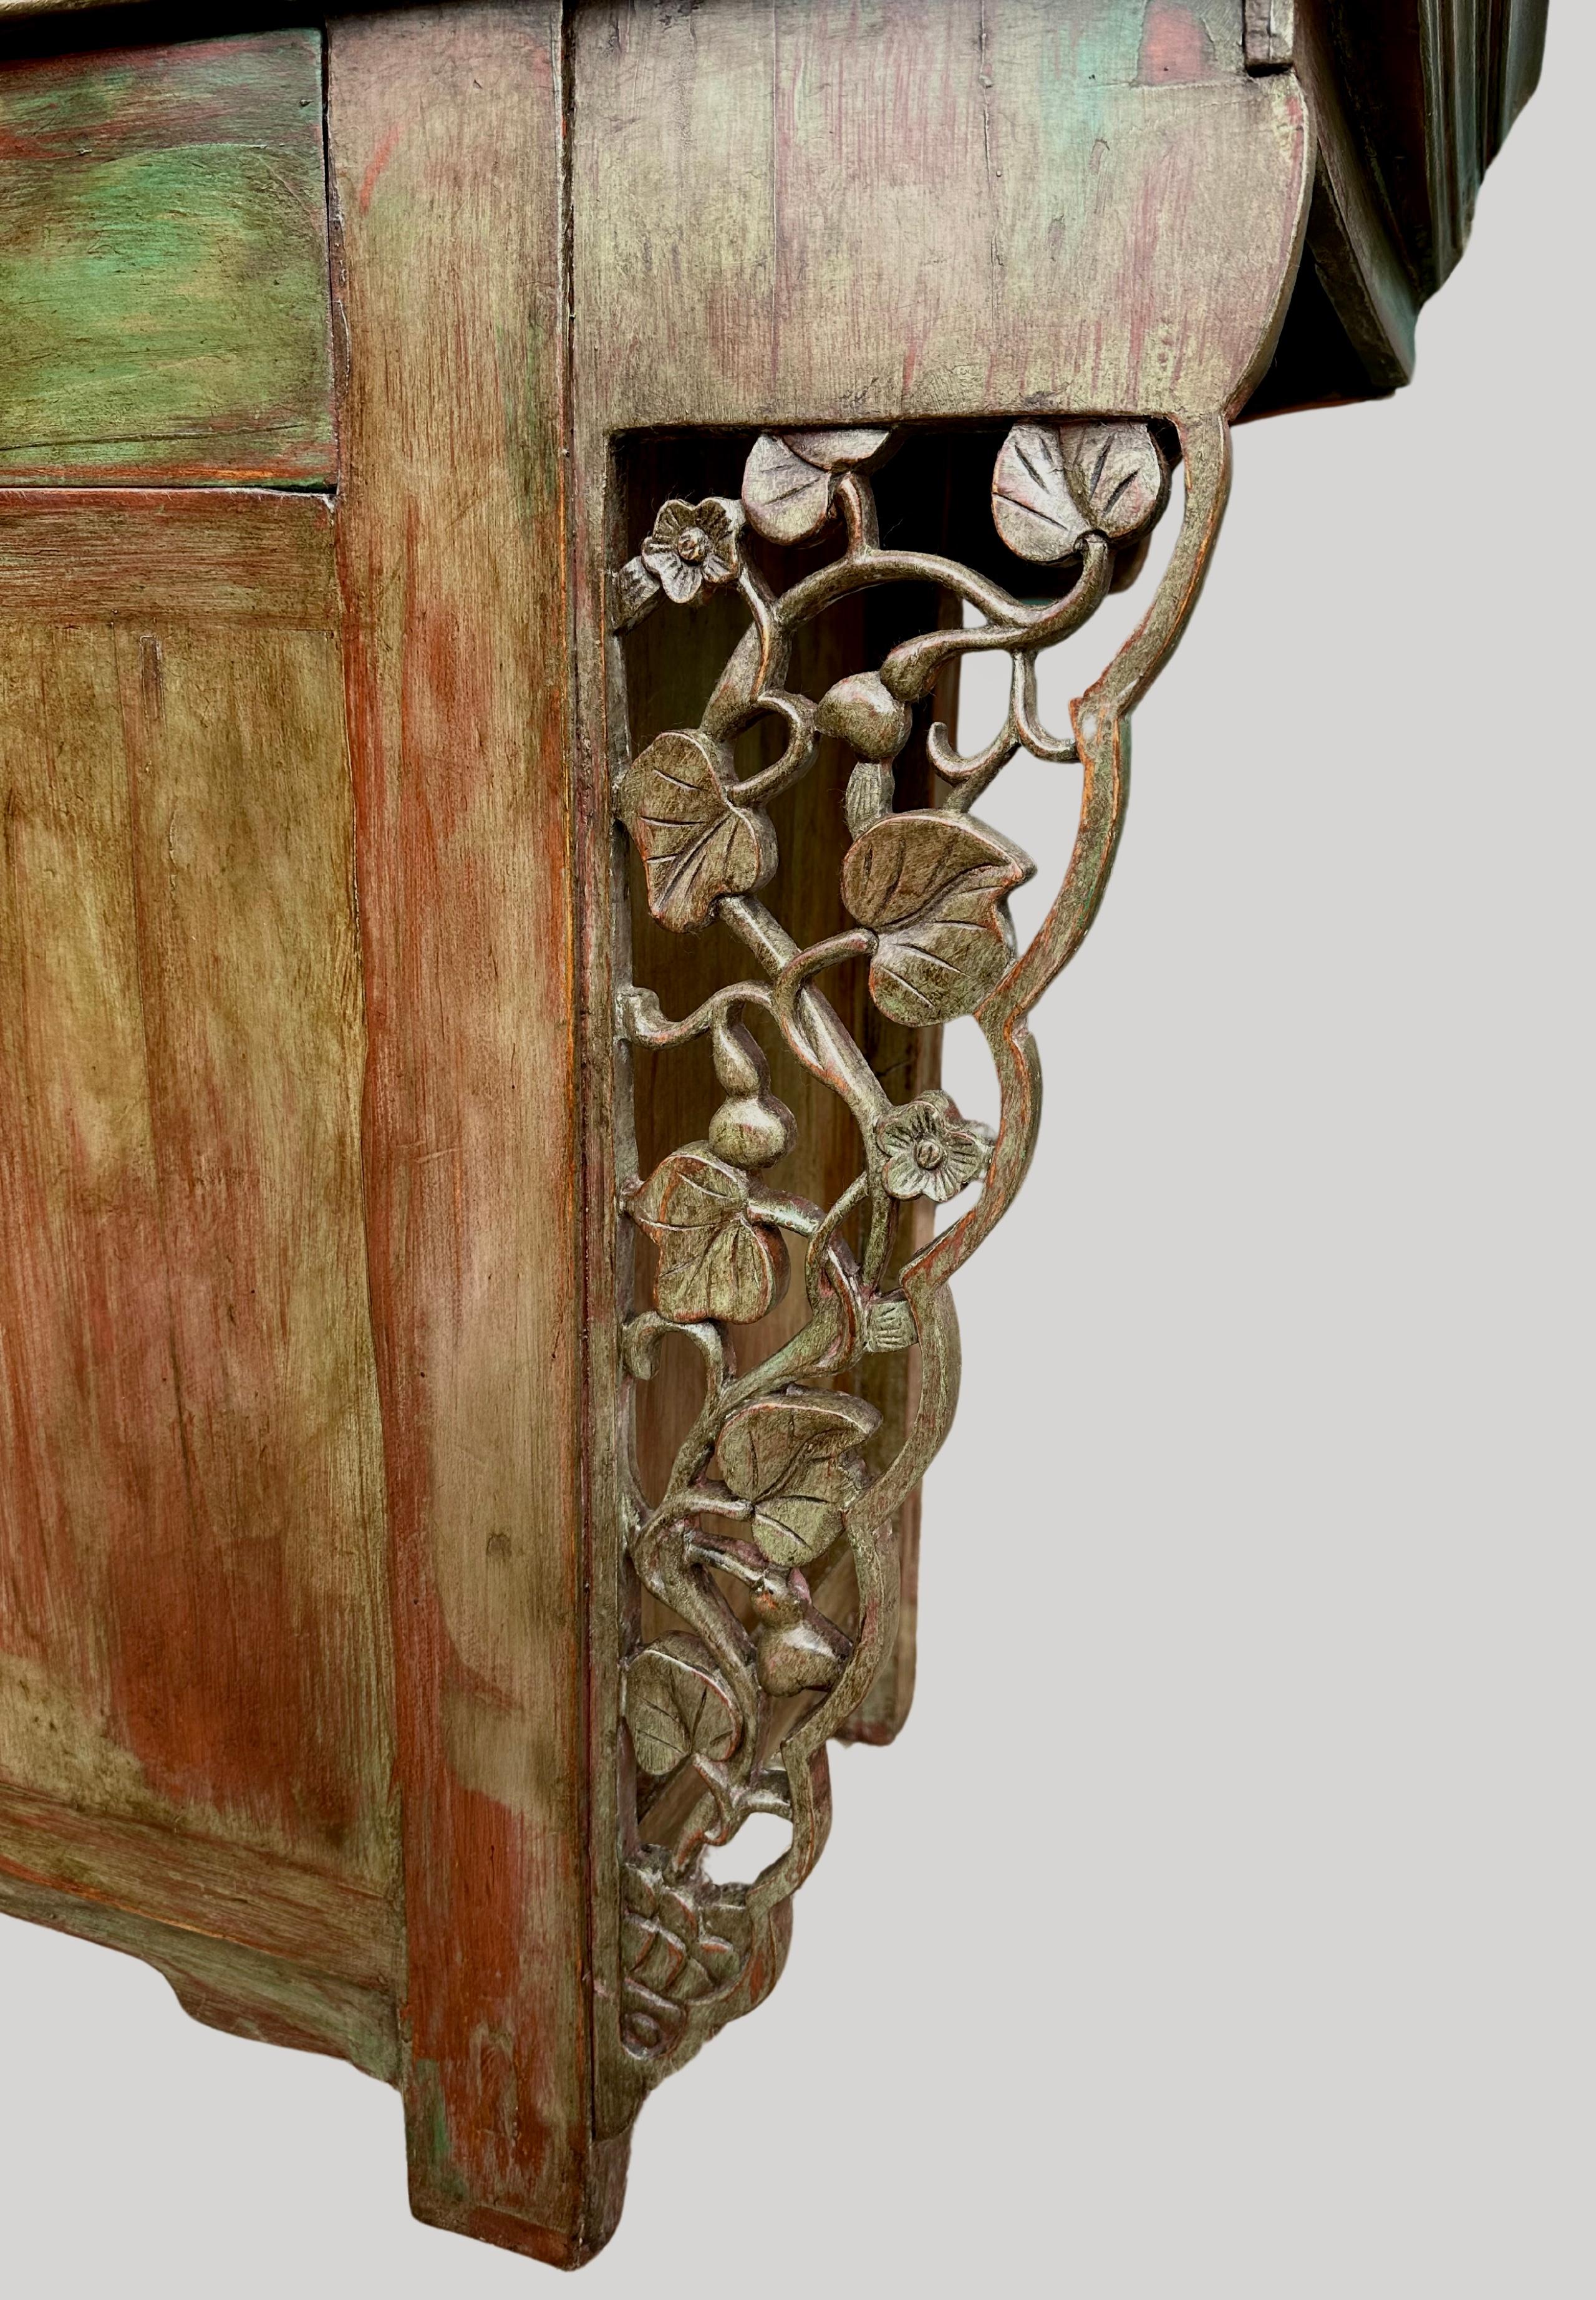 Ancien cabinet d'autel chinois de la dynastie Qing, datant de la fin du XIXe siècle.
Ce meuble d'autel magnifiquement restauré, qui servait à l'origine à déposer les offrandes pour le culte des ancêtres, comporte trois tiroirs en frise sur des